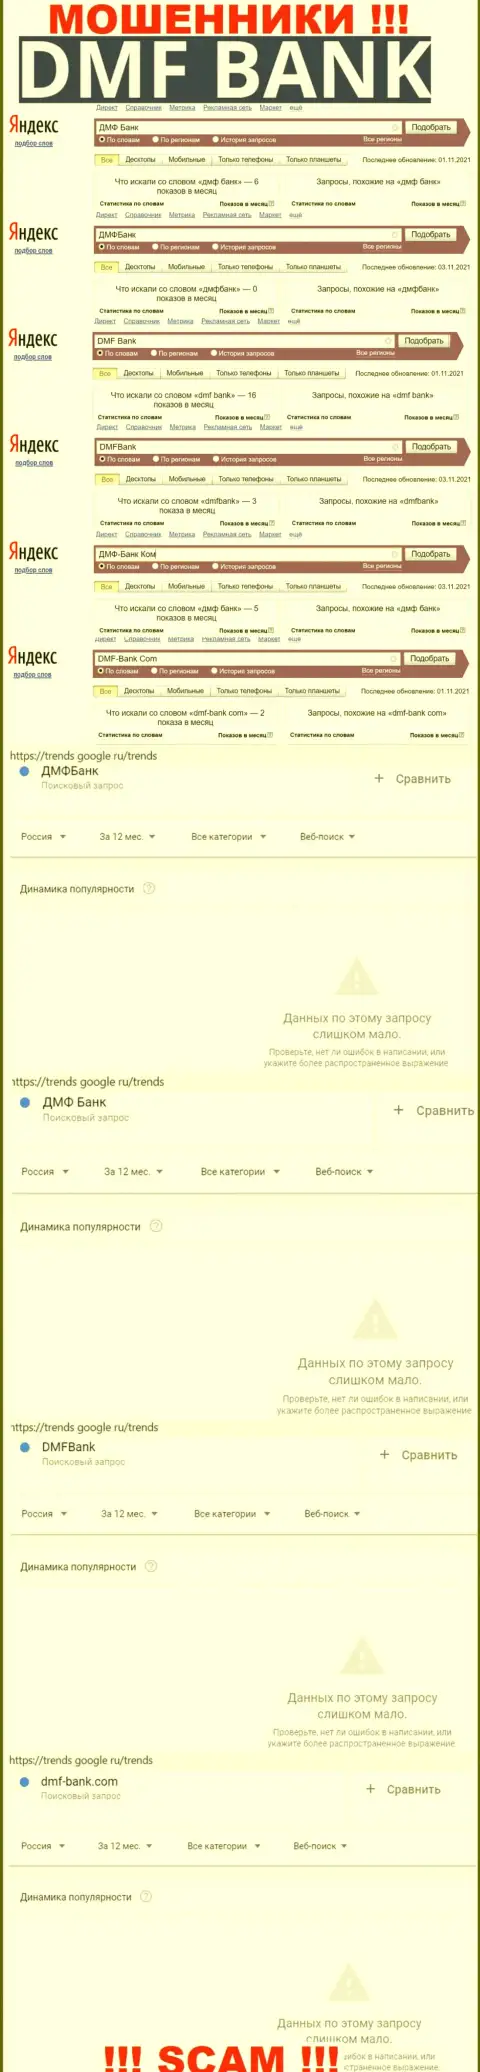 Анализ онлайн-запросов по жуликам ДМФ Банк в интернет сети